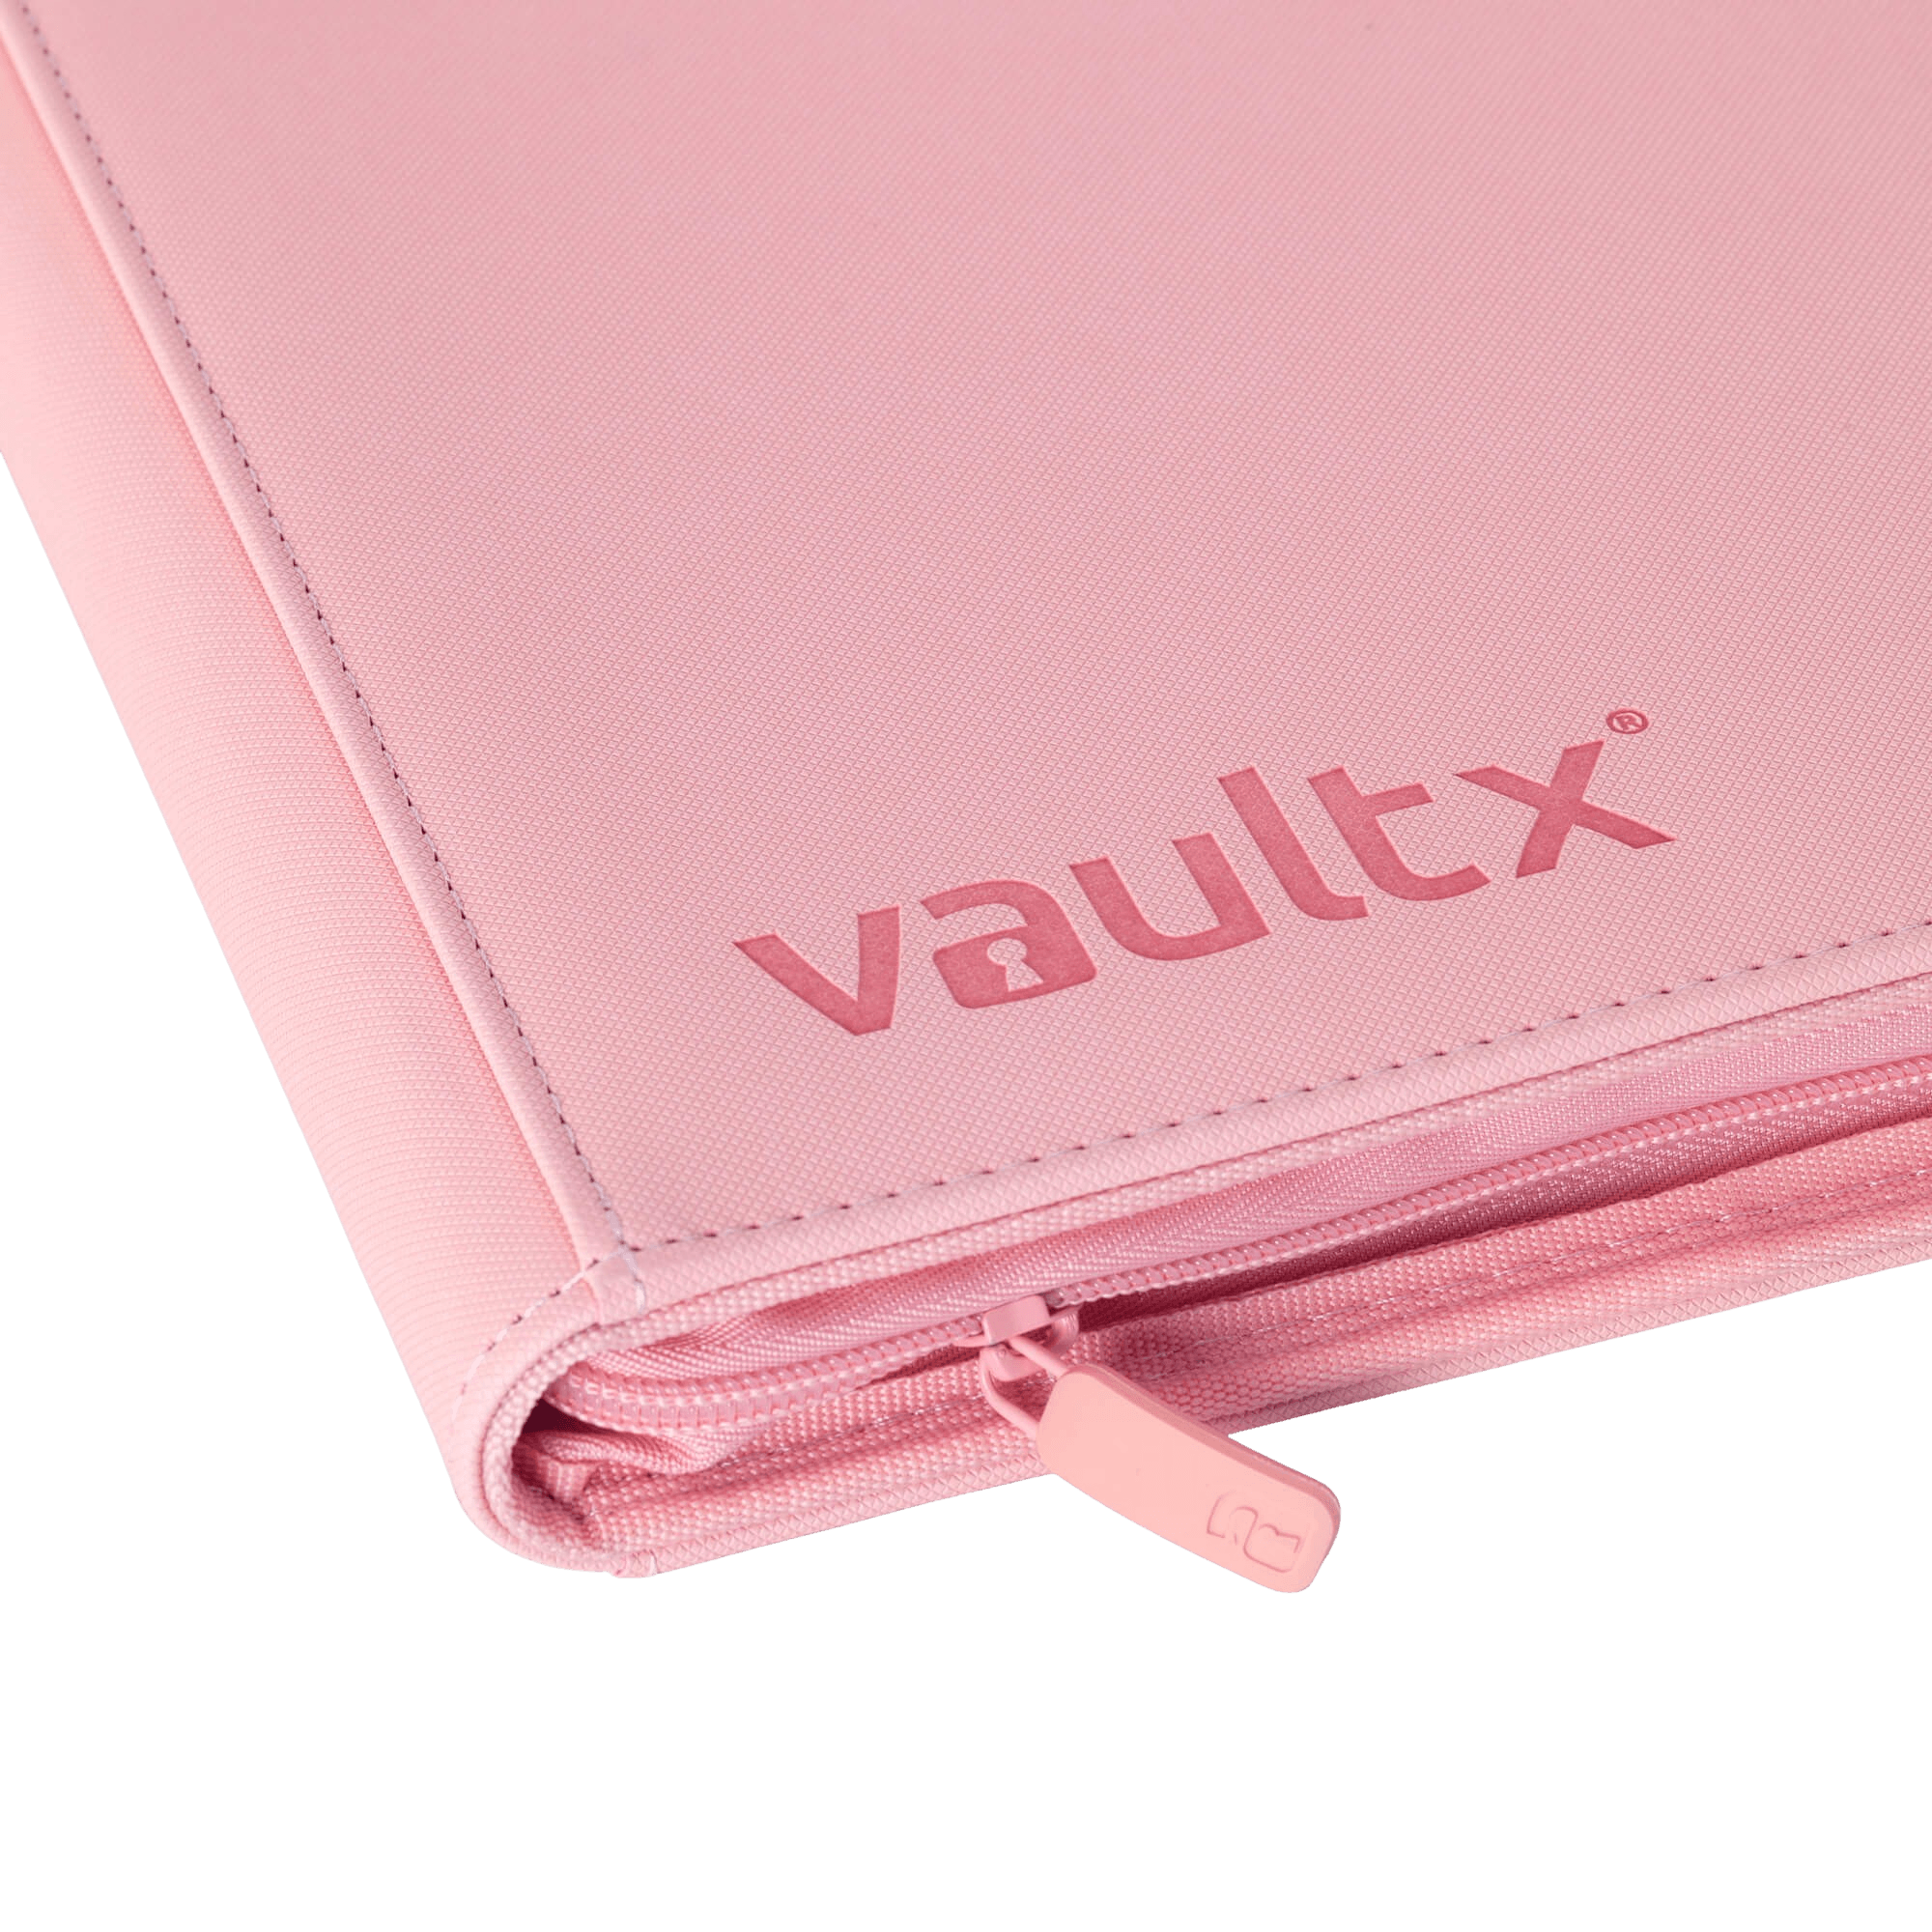 Vault X 4-Pocket Exo-Tec® Zip Binder - Just Pink - The Card Vault